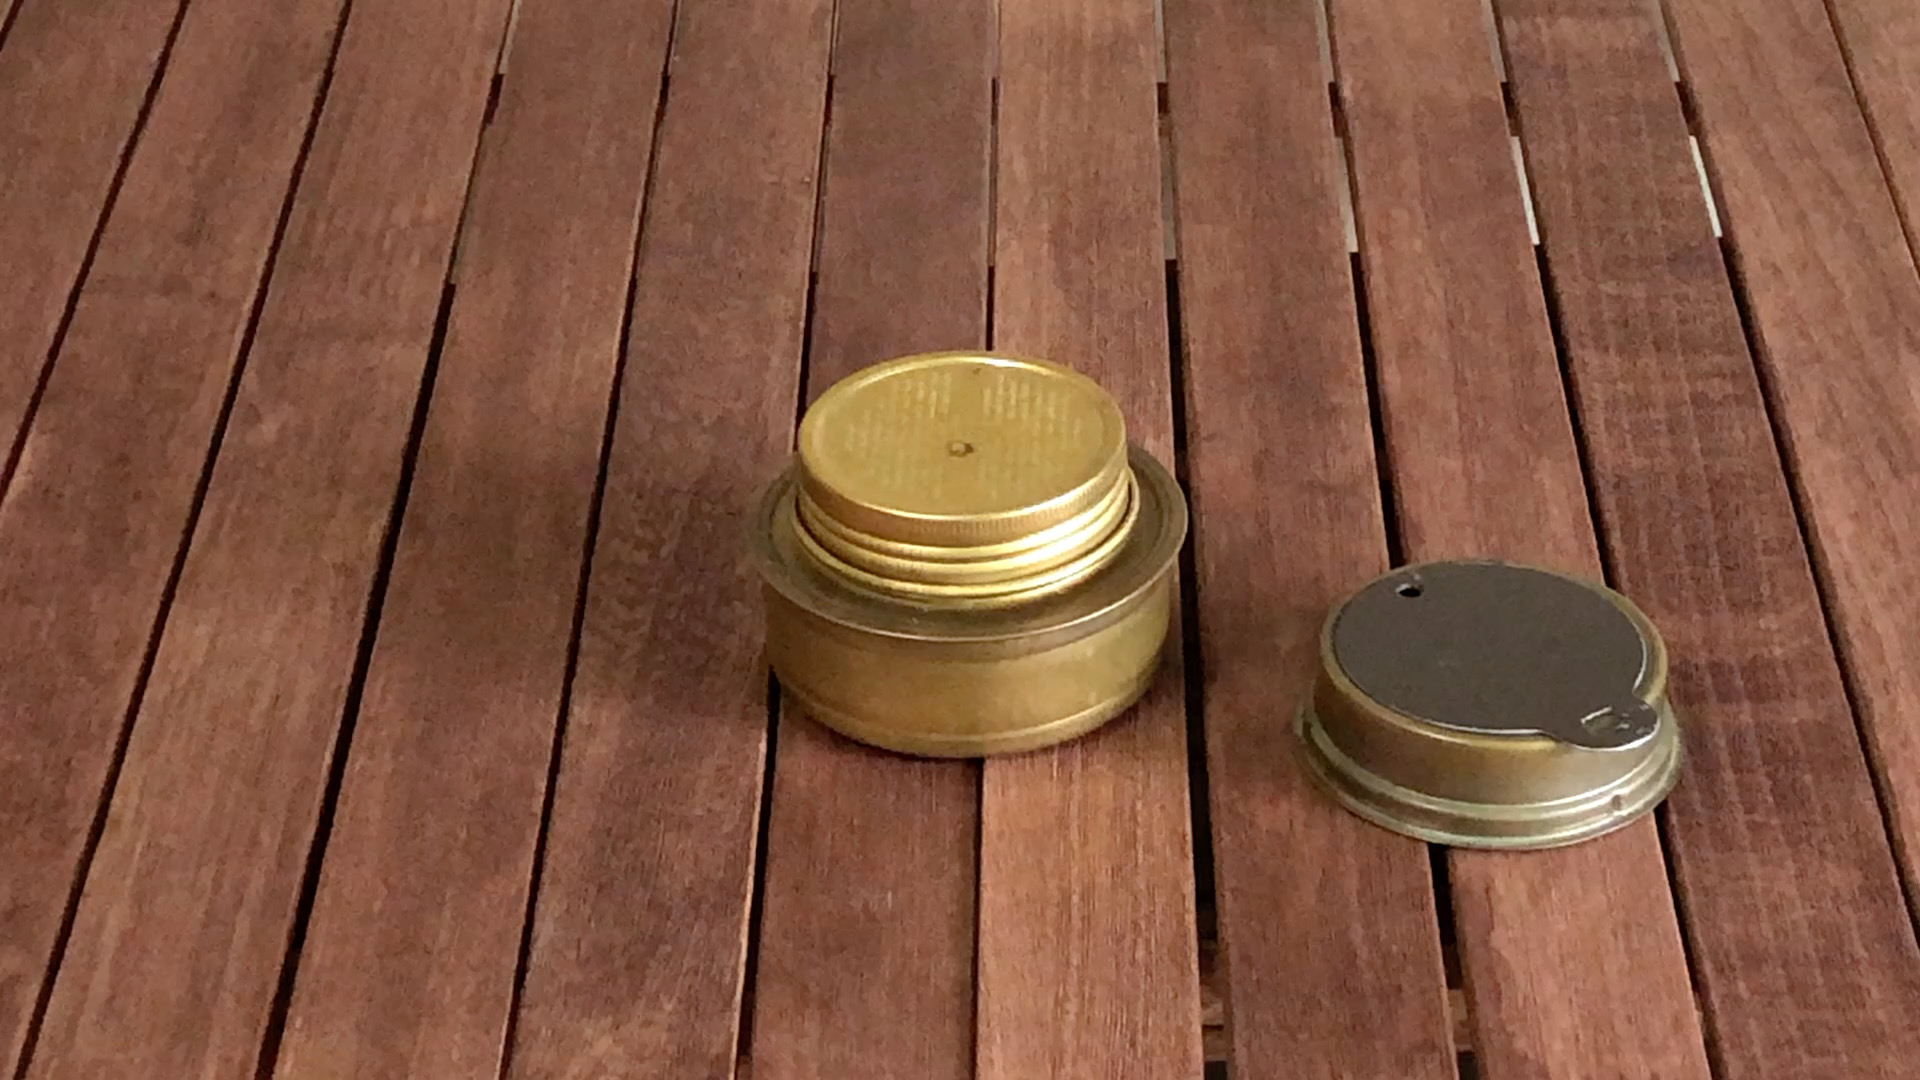 【DIY】缶詰のフタとハサミだけでトランギア消火フタの取っ手問題を解決